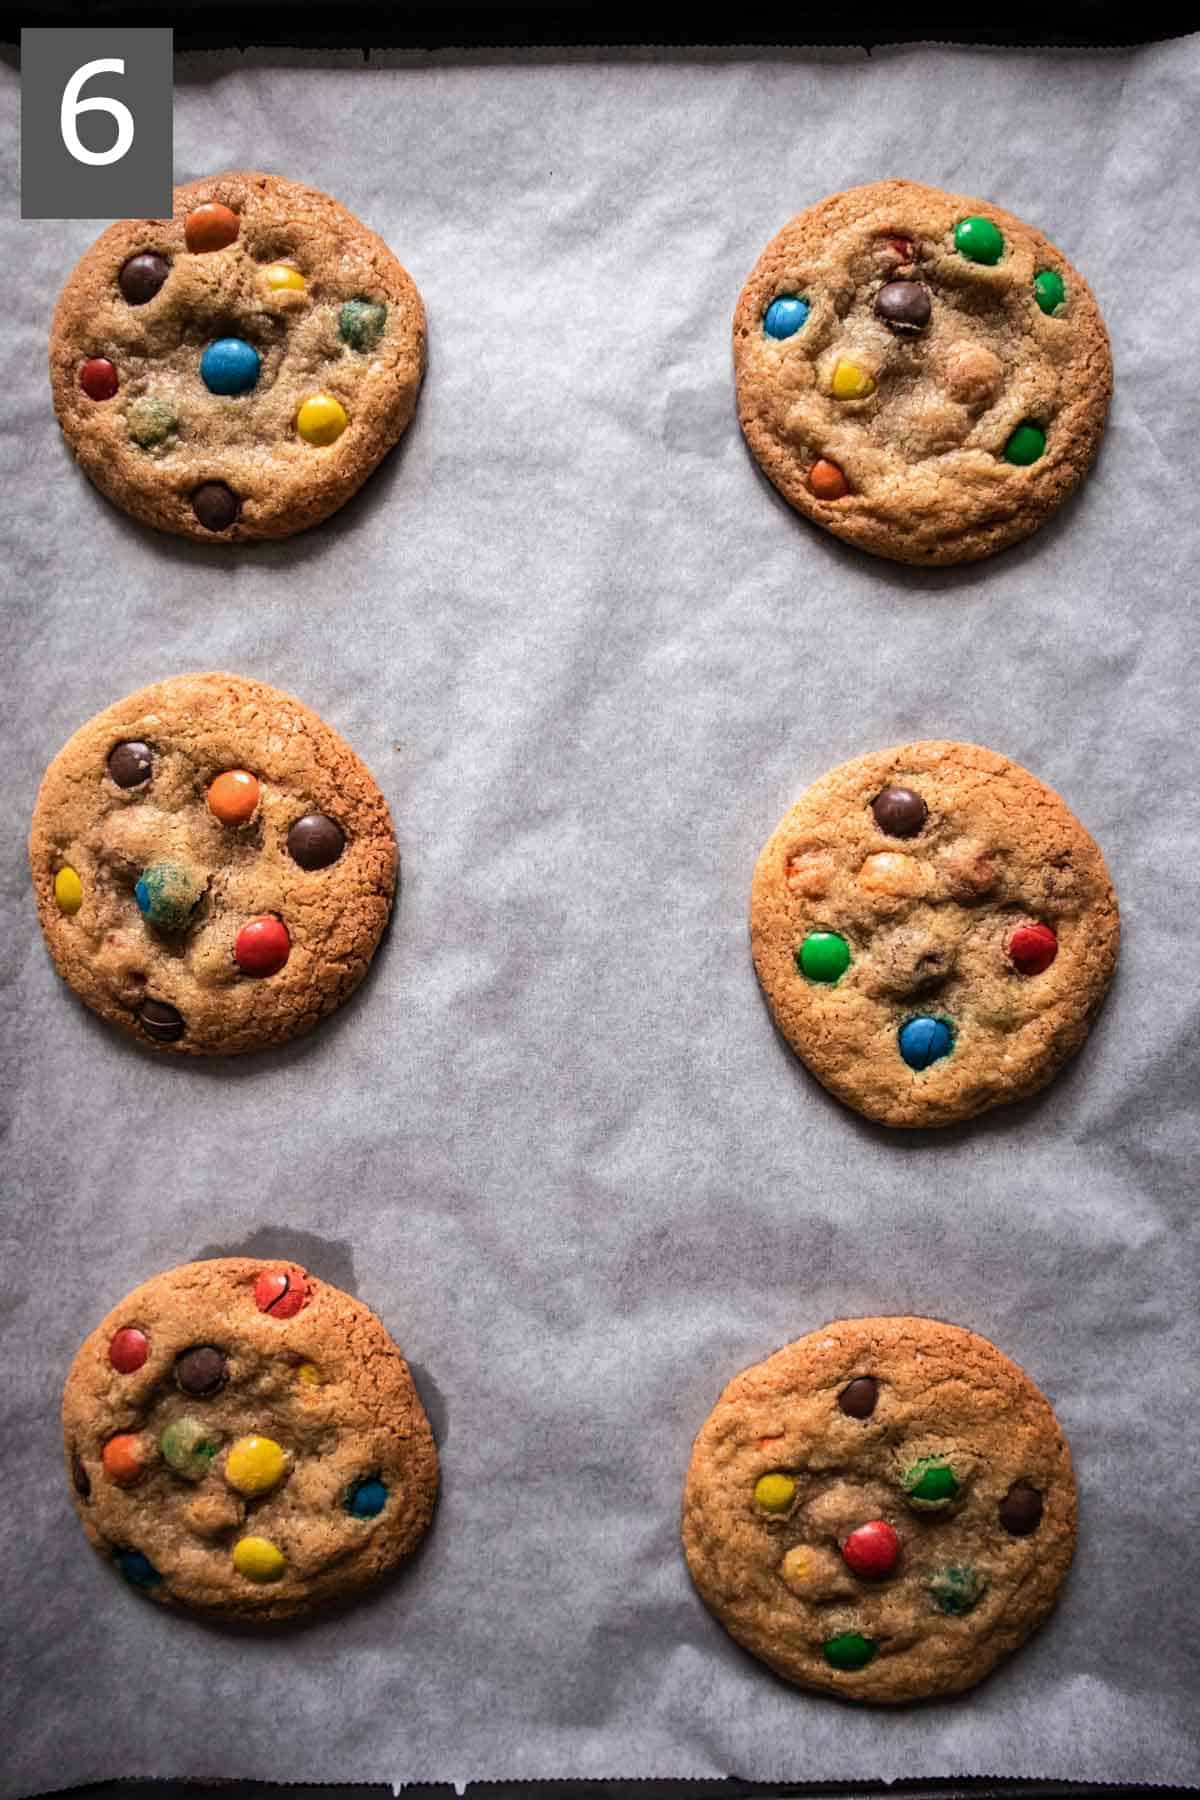 freshly baked gluten-free M&M cookies